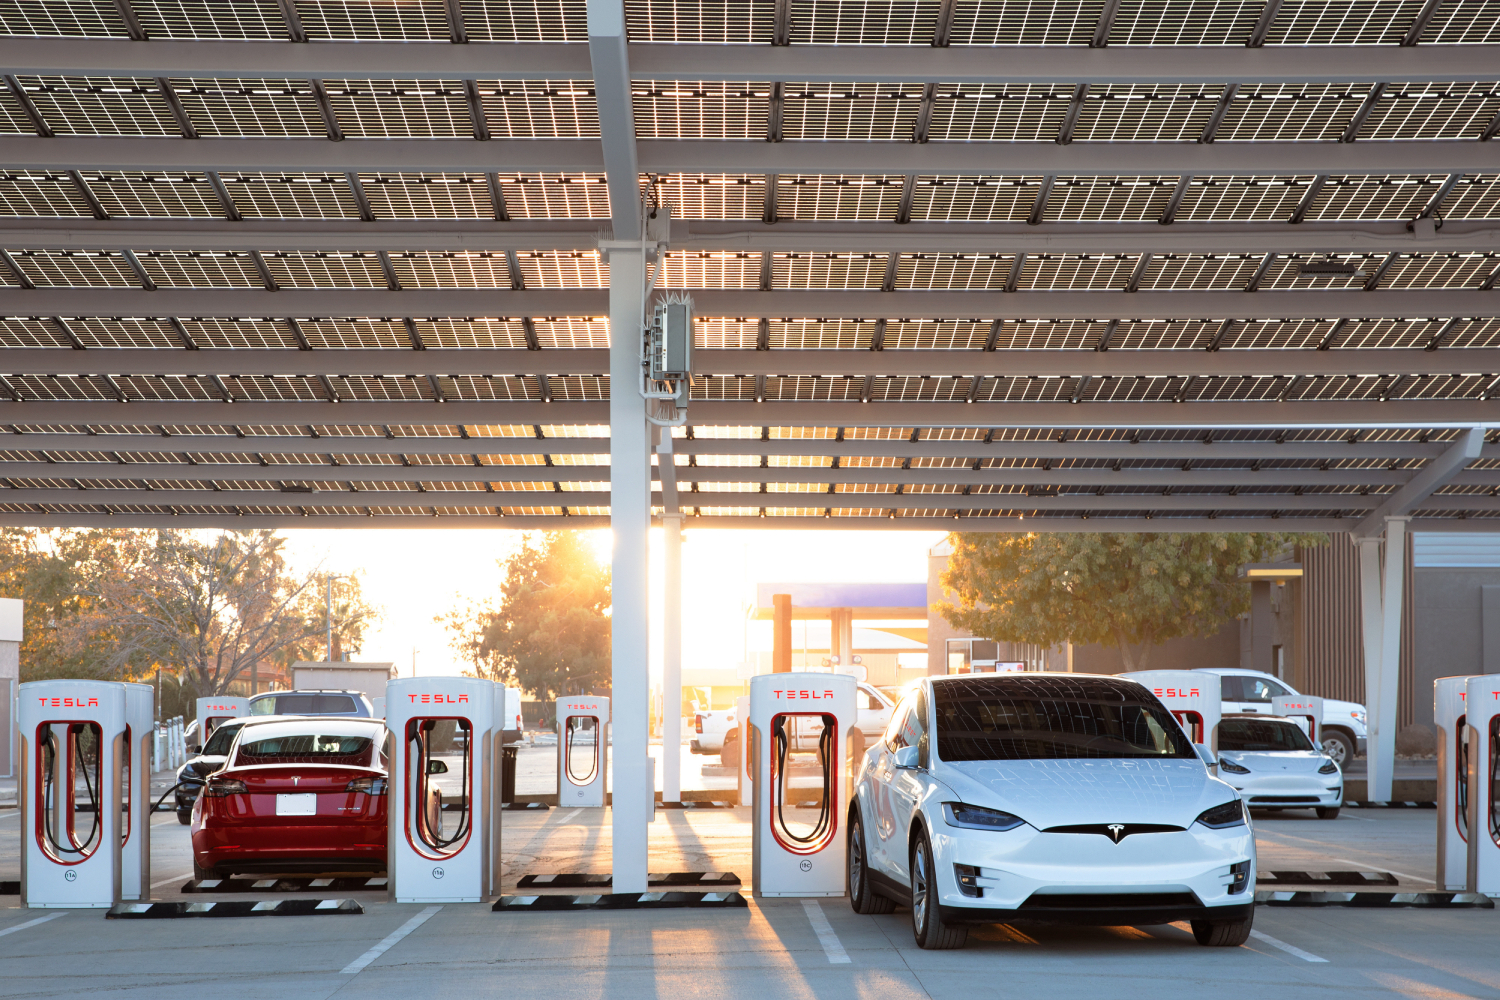 The Tesla V4 Supercharger design rumors and a current Tesla charging station